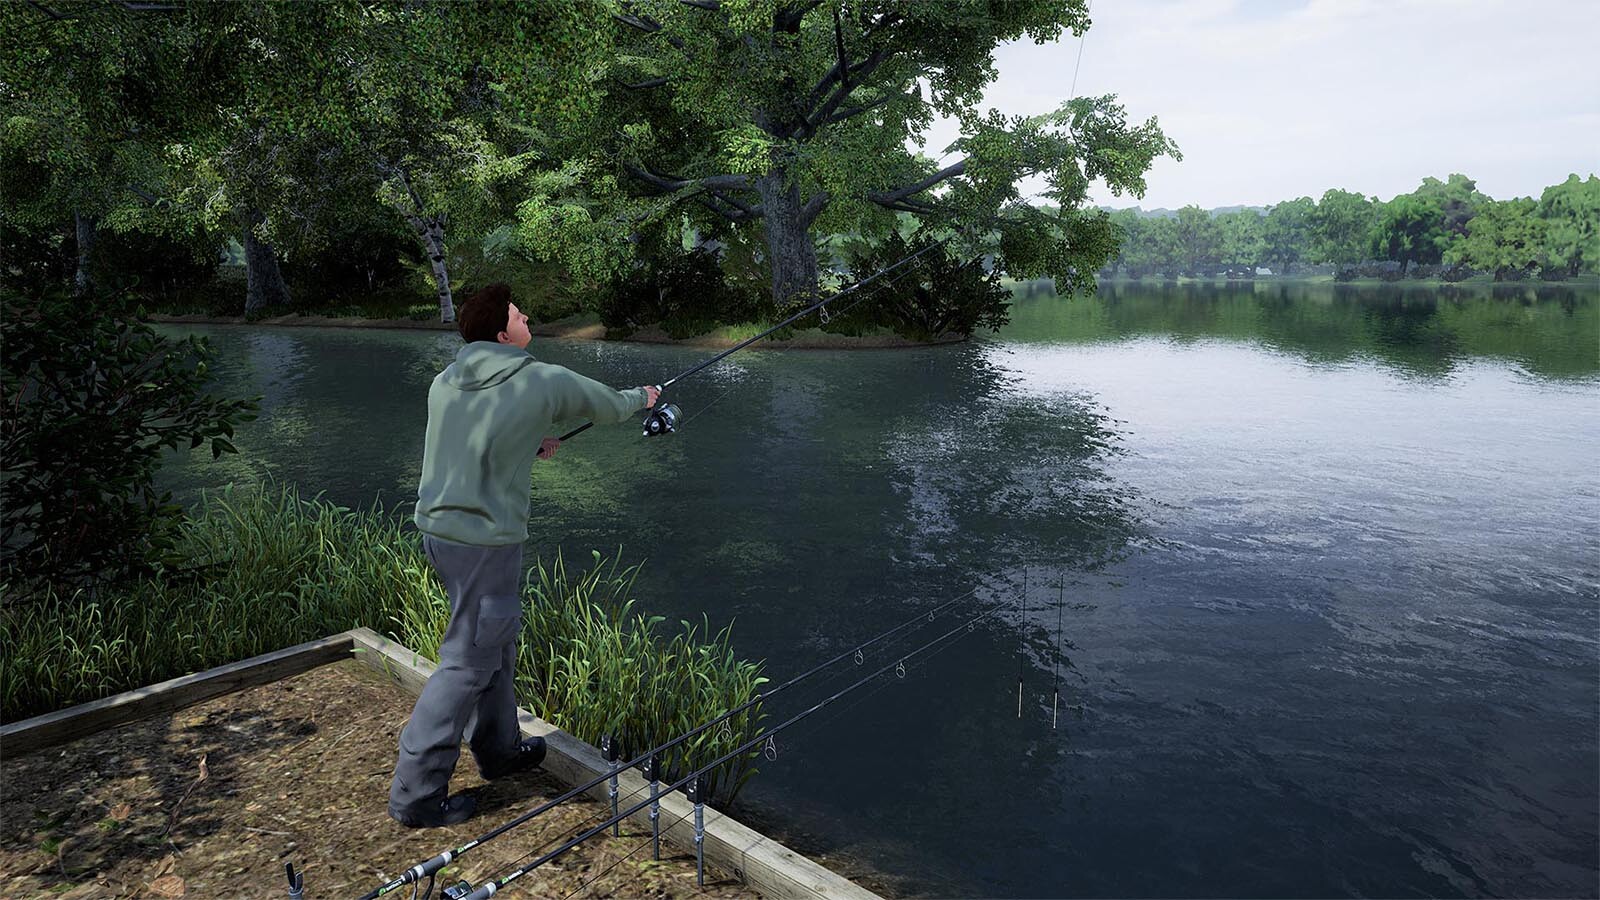 Fishing Sim World®: Pro Tour - Giant Carp Pack